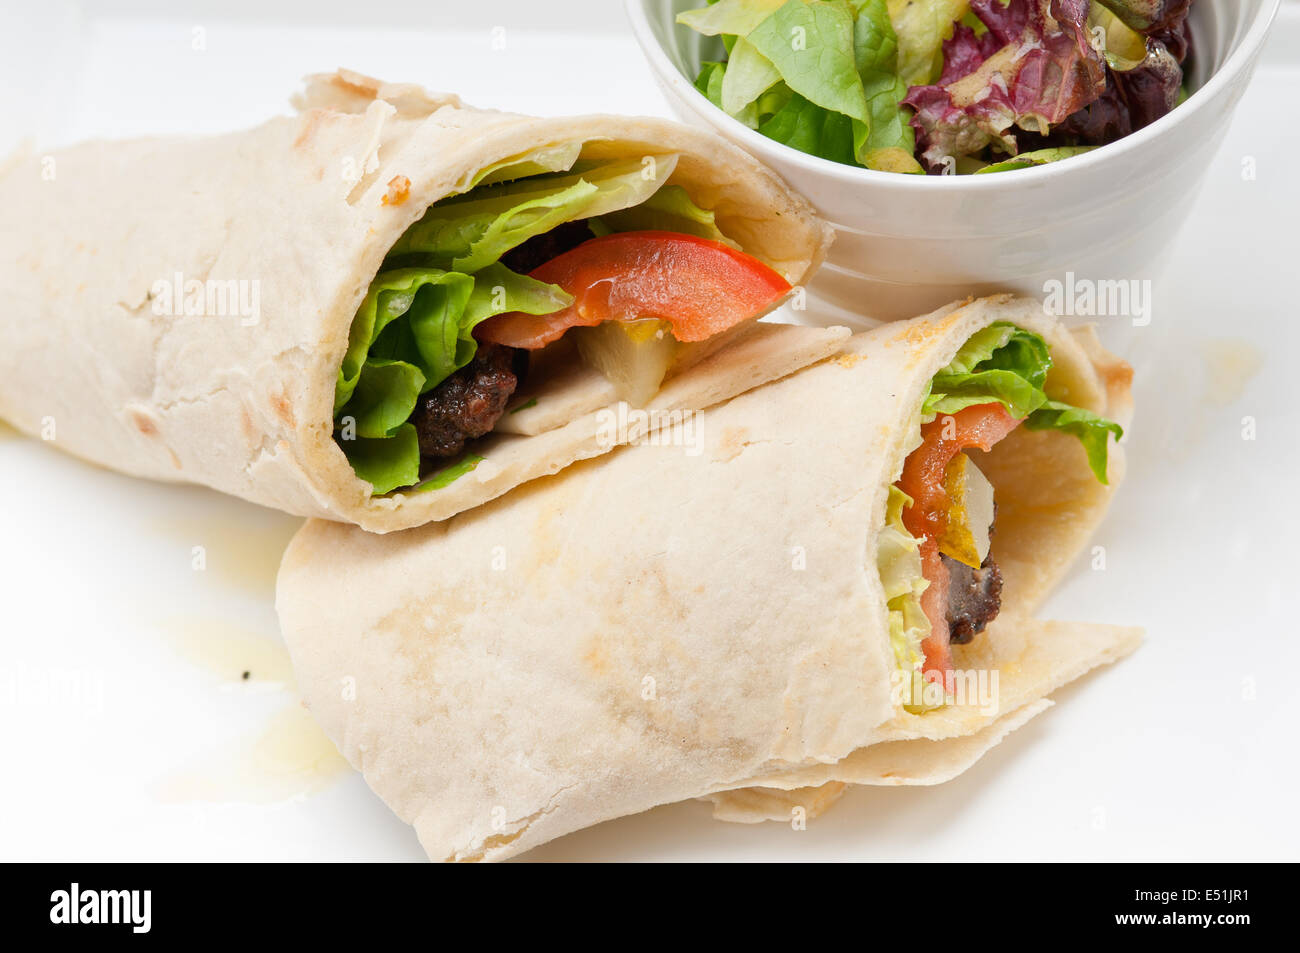 kafta shawarma chicken pita wrap roll sandwich Stock Photo